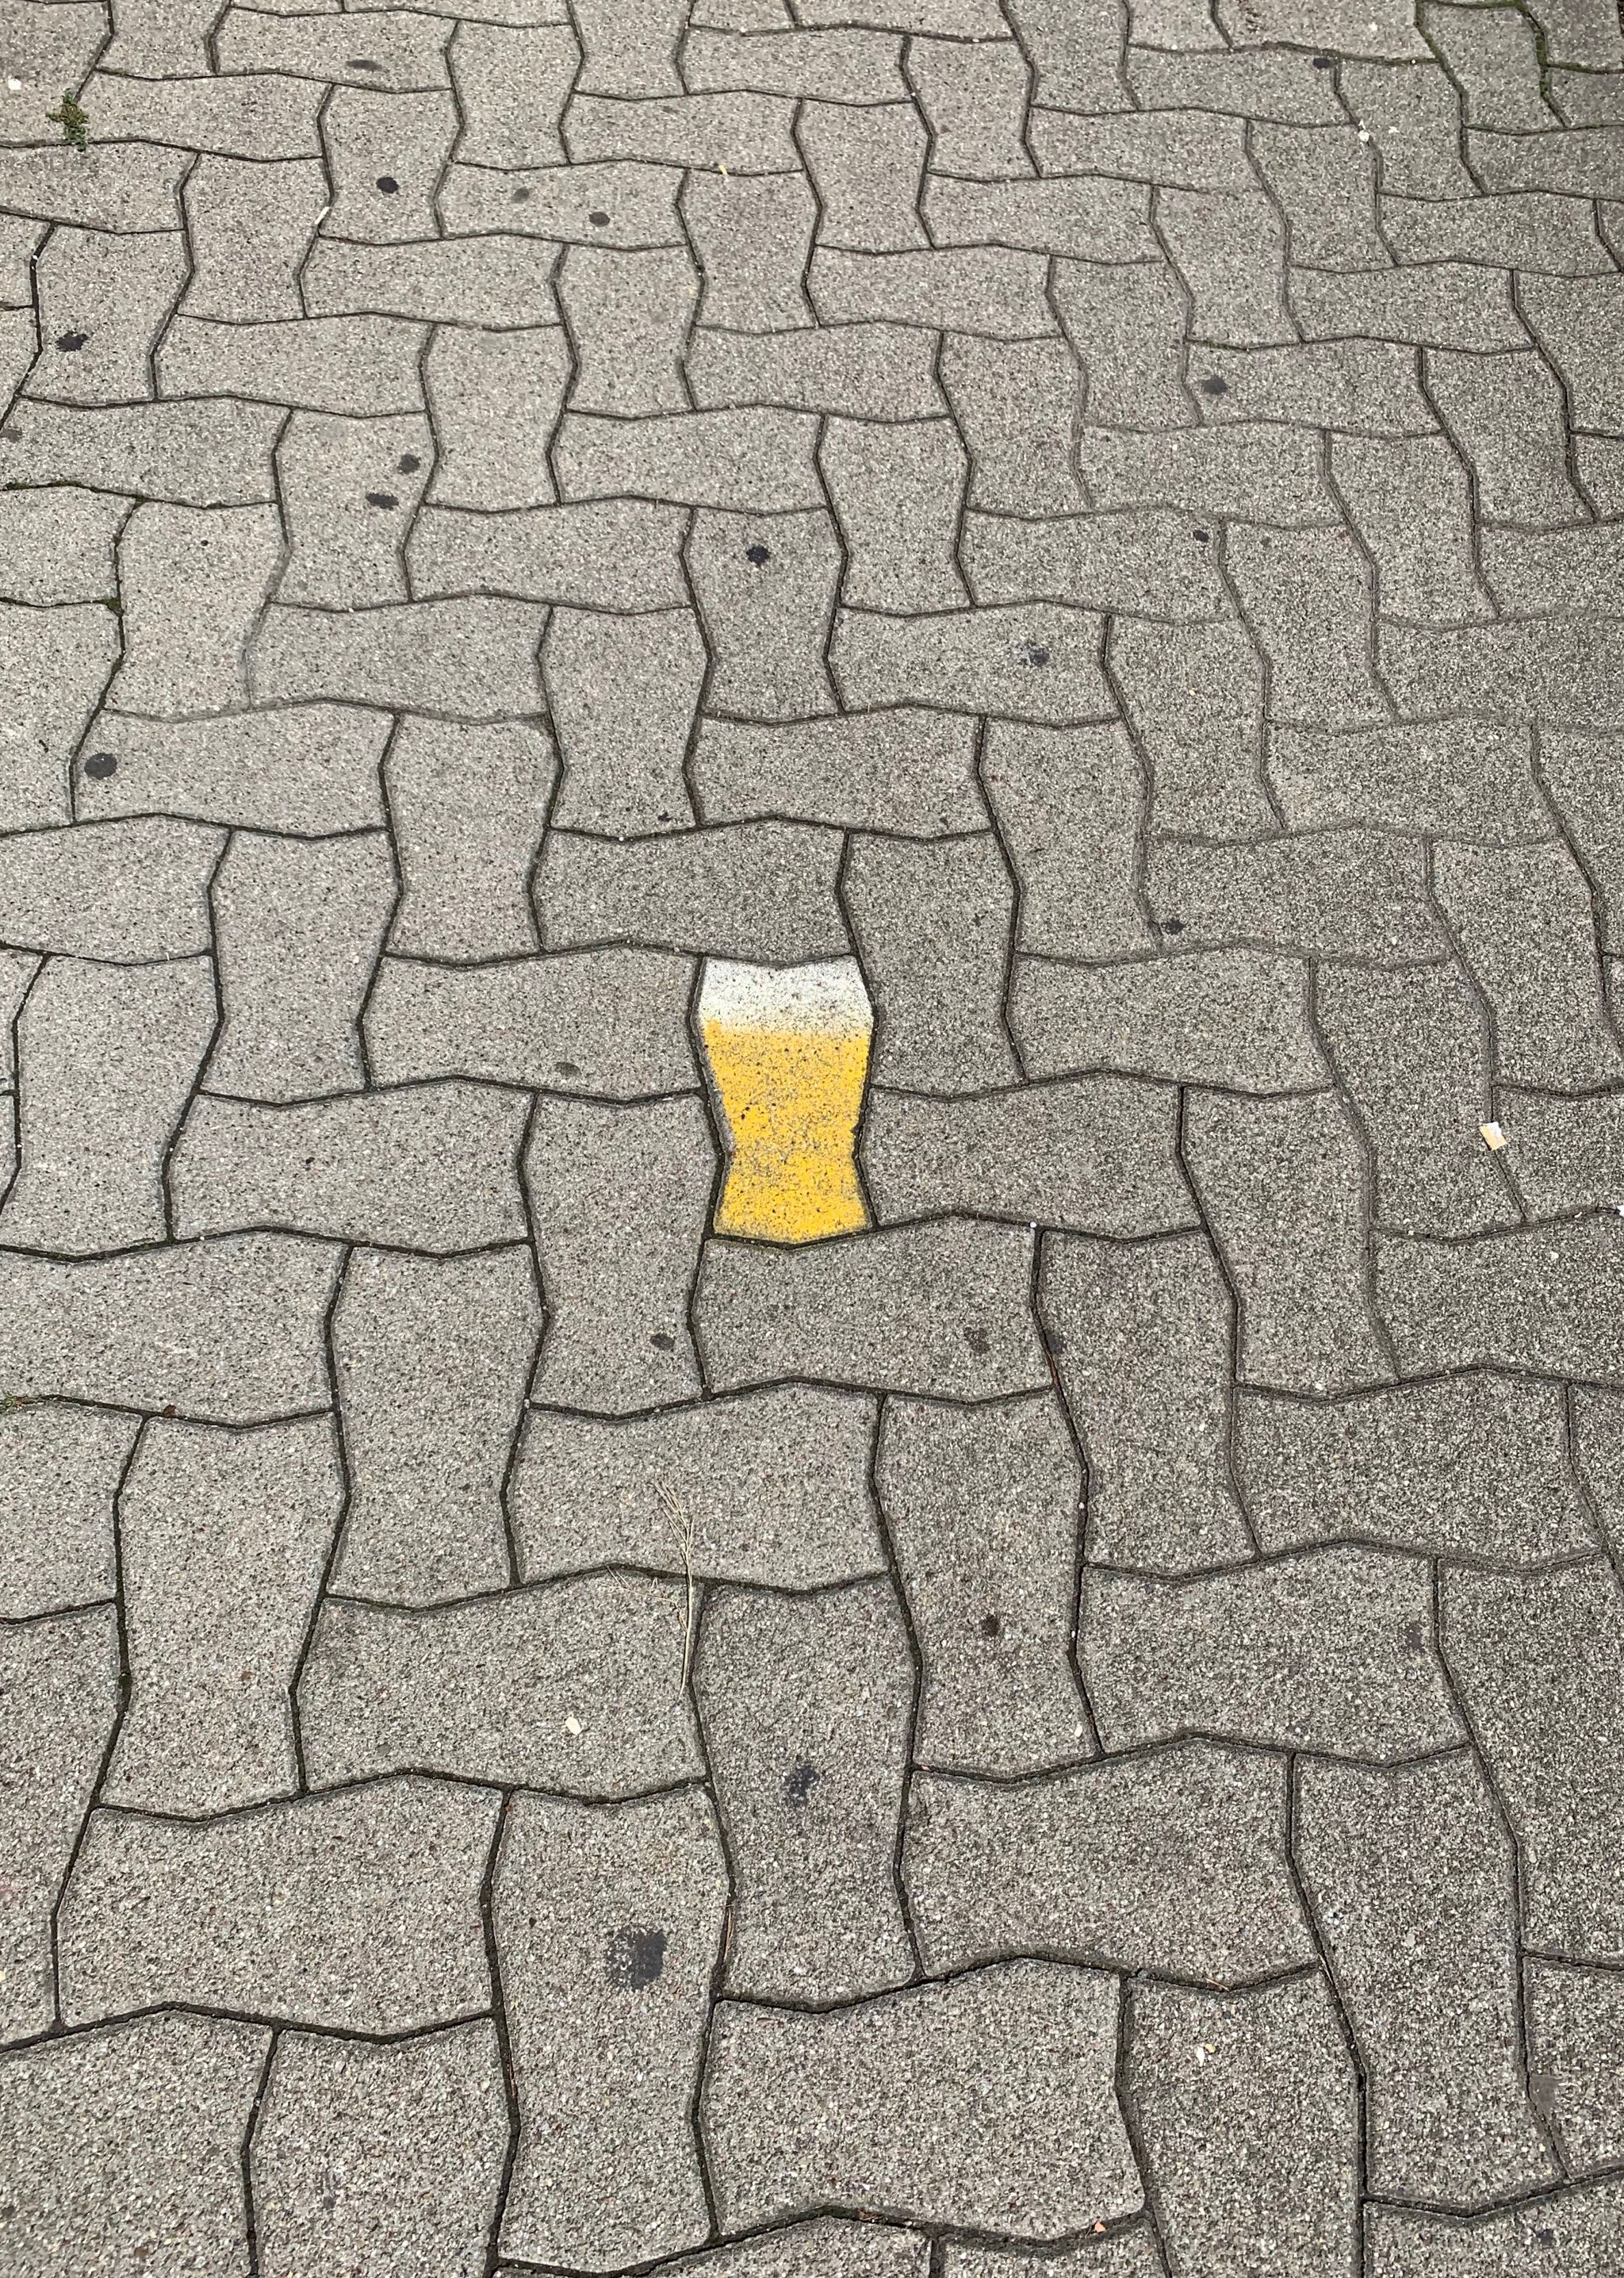 Unknown - Strassbourg&mdash;Cup of bier